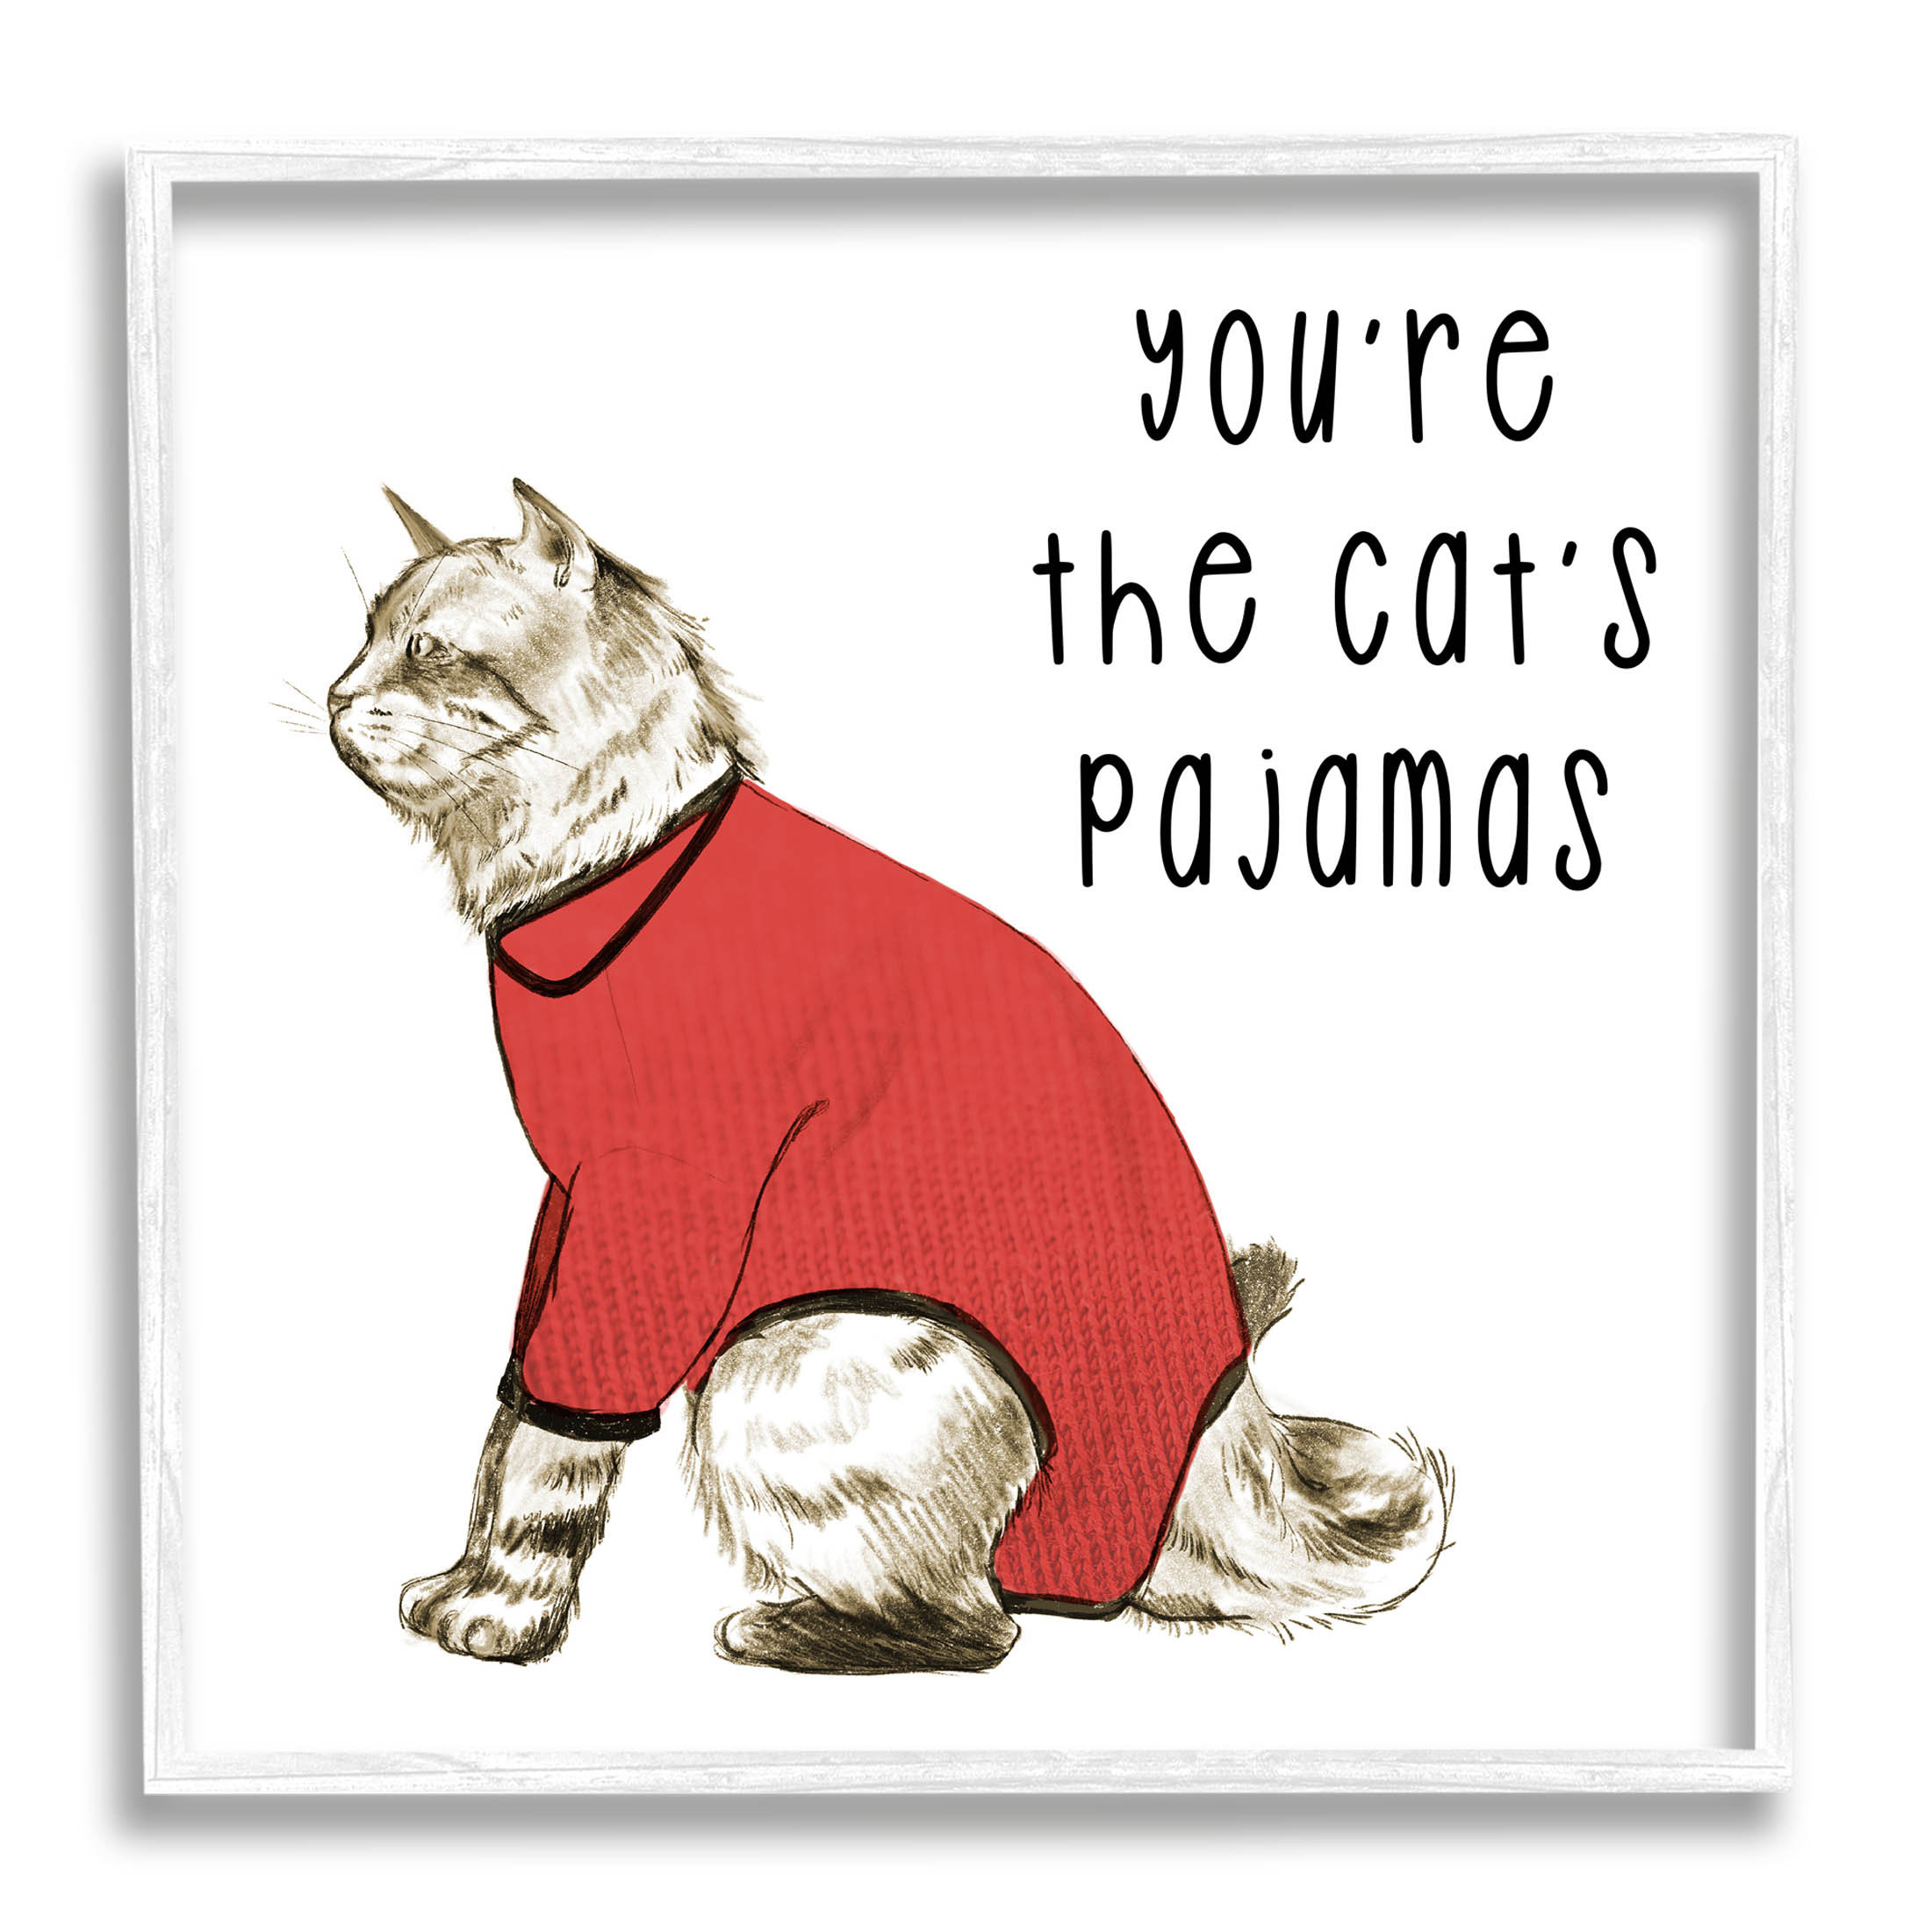 The Cat's Pajamas